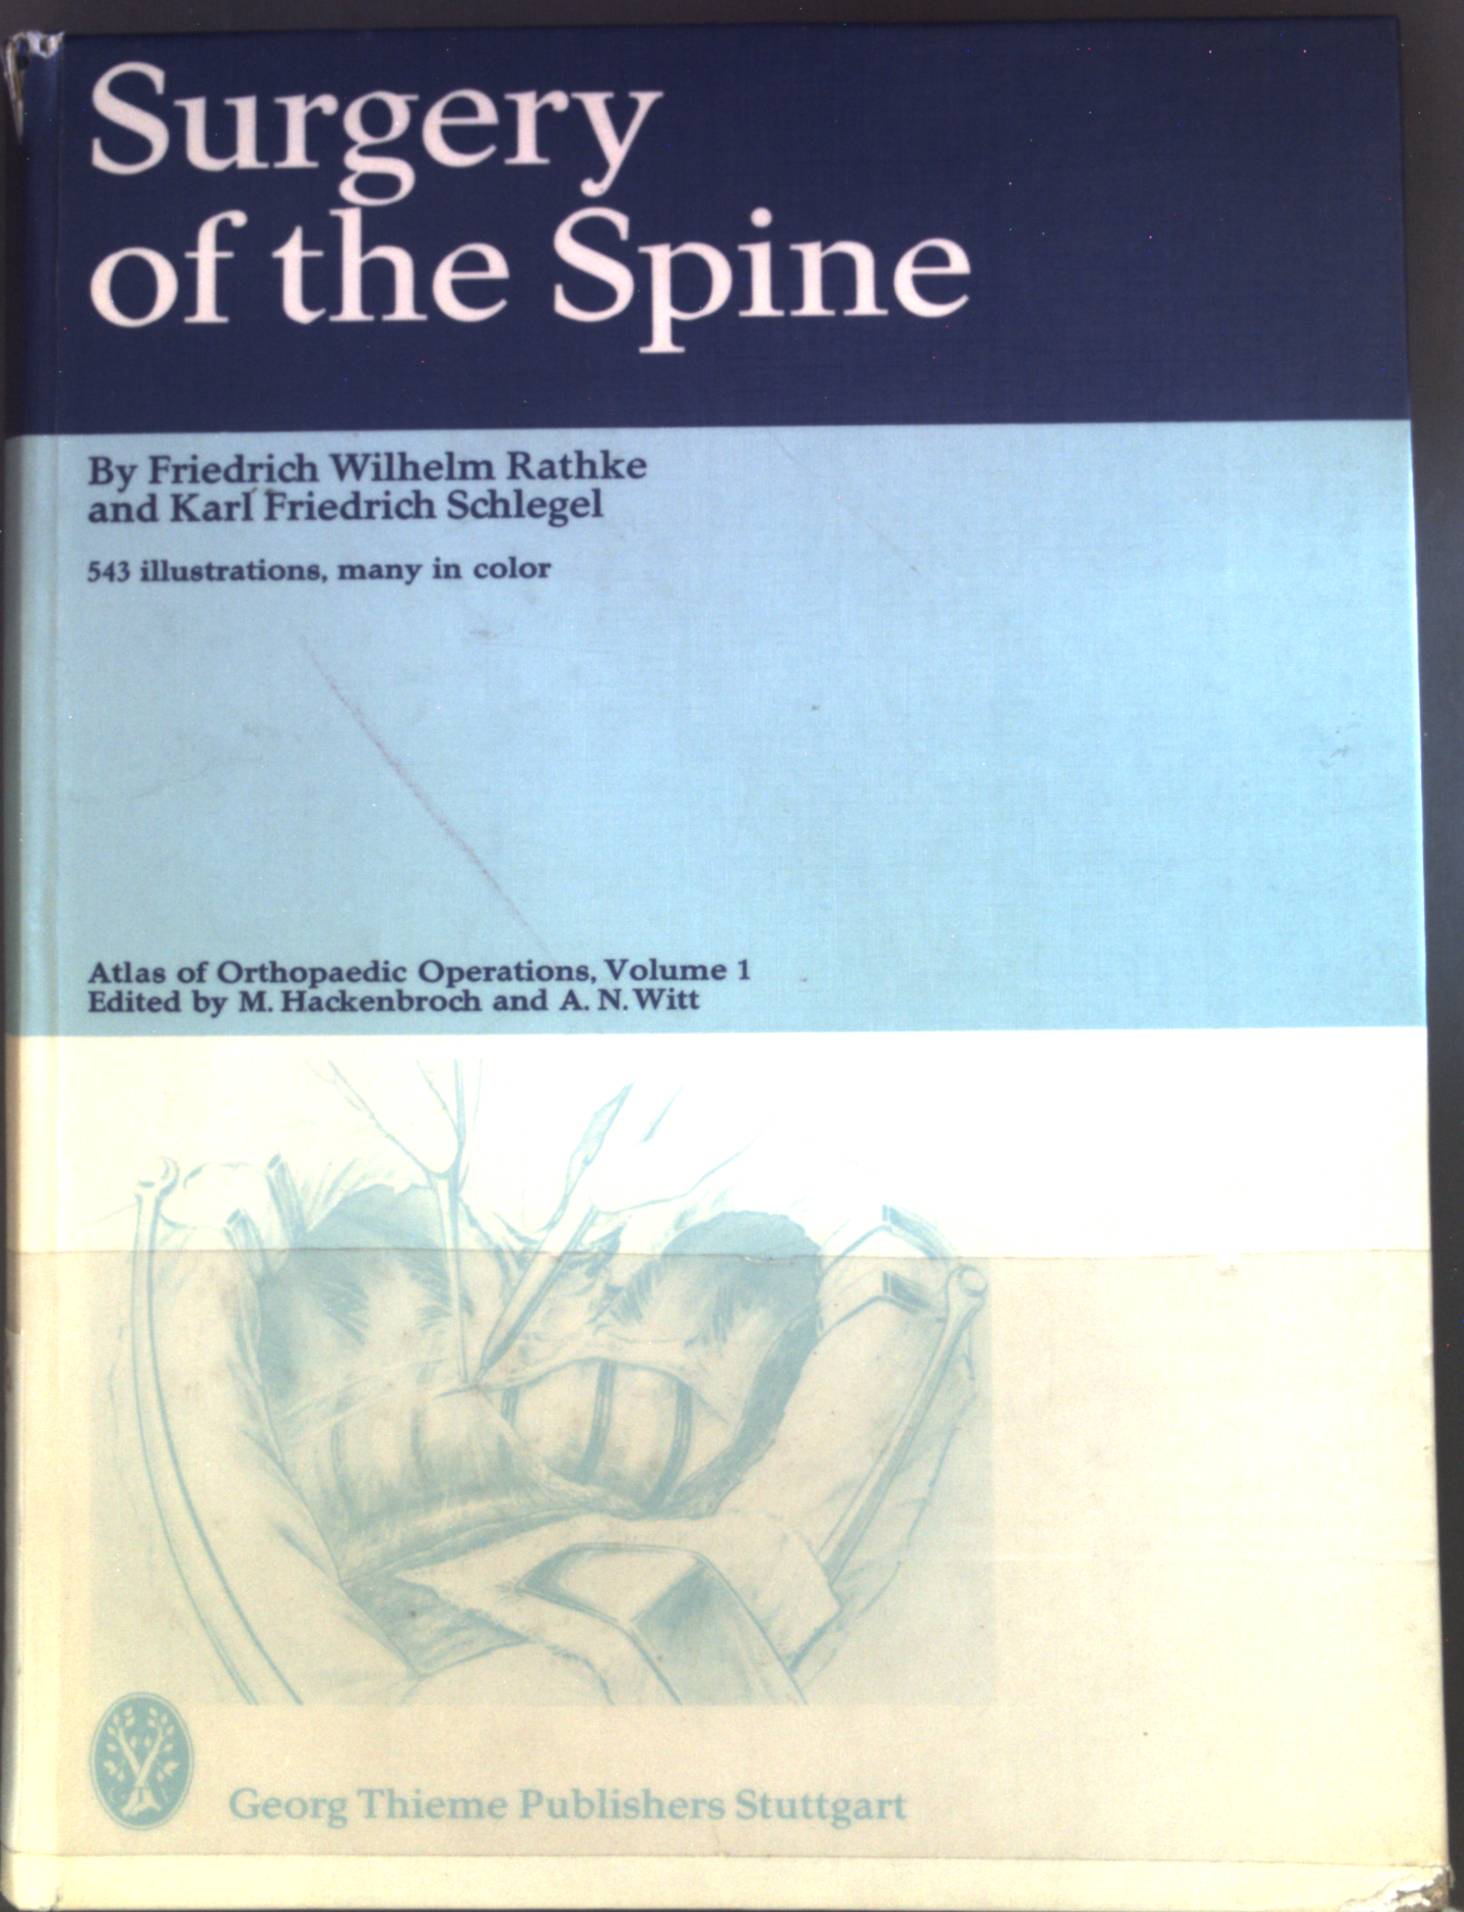 Surgery of the spine. Atlas of orthopaedic operations ; Vol. 1 - Rathke, Friedrich Wilhelm und Karl Friedrich Schlegel